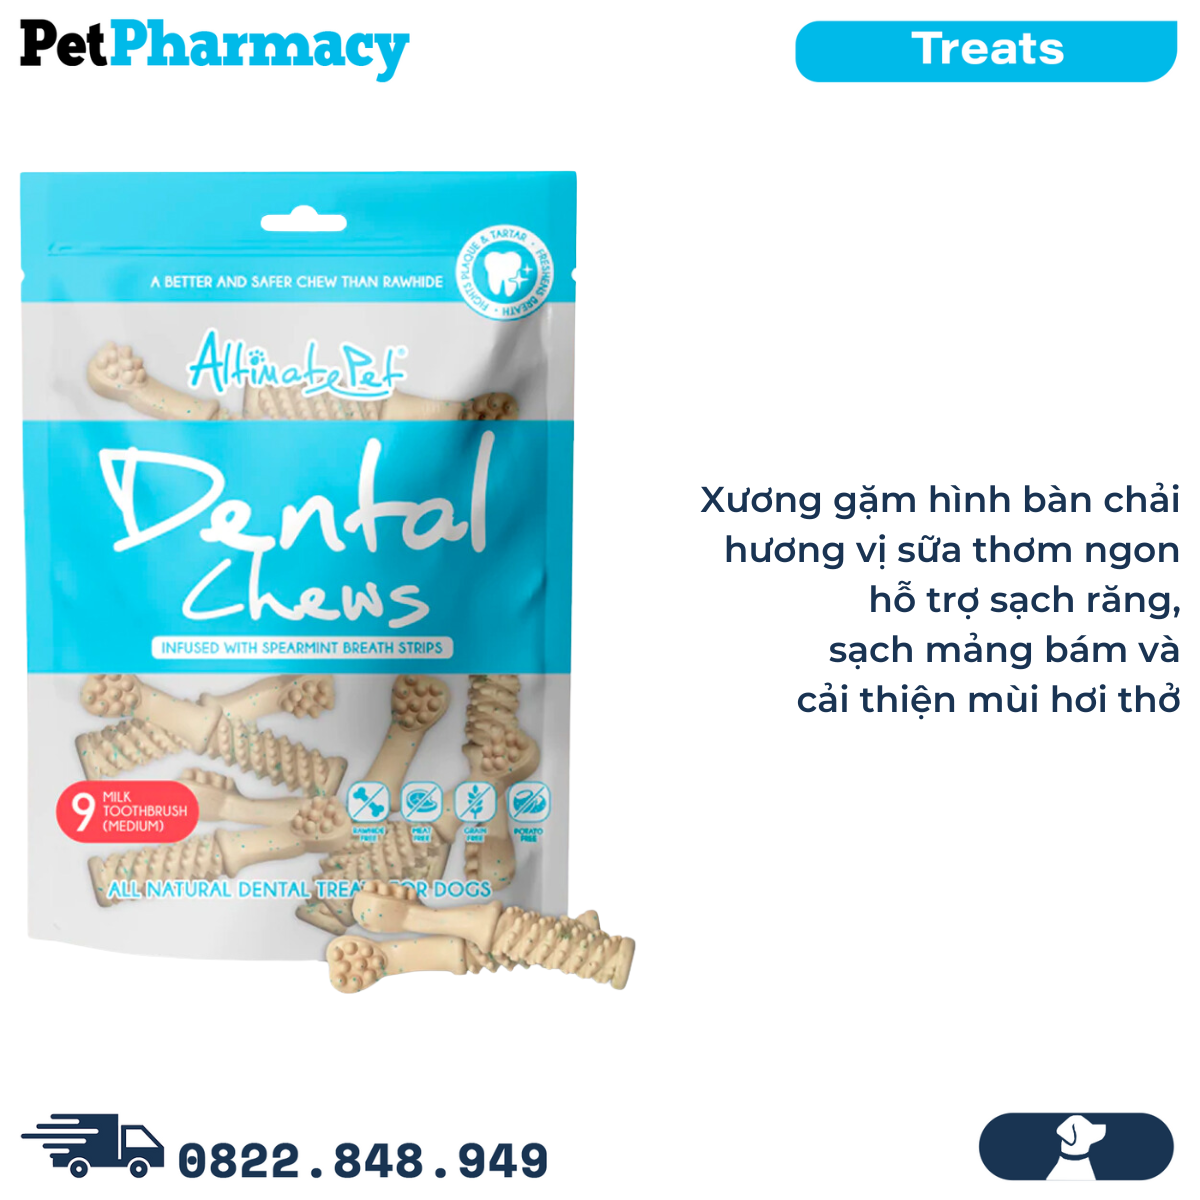  Xương gặm thơm miệng Dental Chews Toothbrush size Medium 150g - 9 milk - Bàn chải vị sữa 